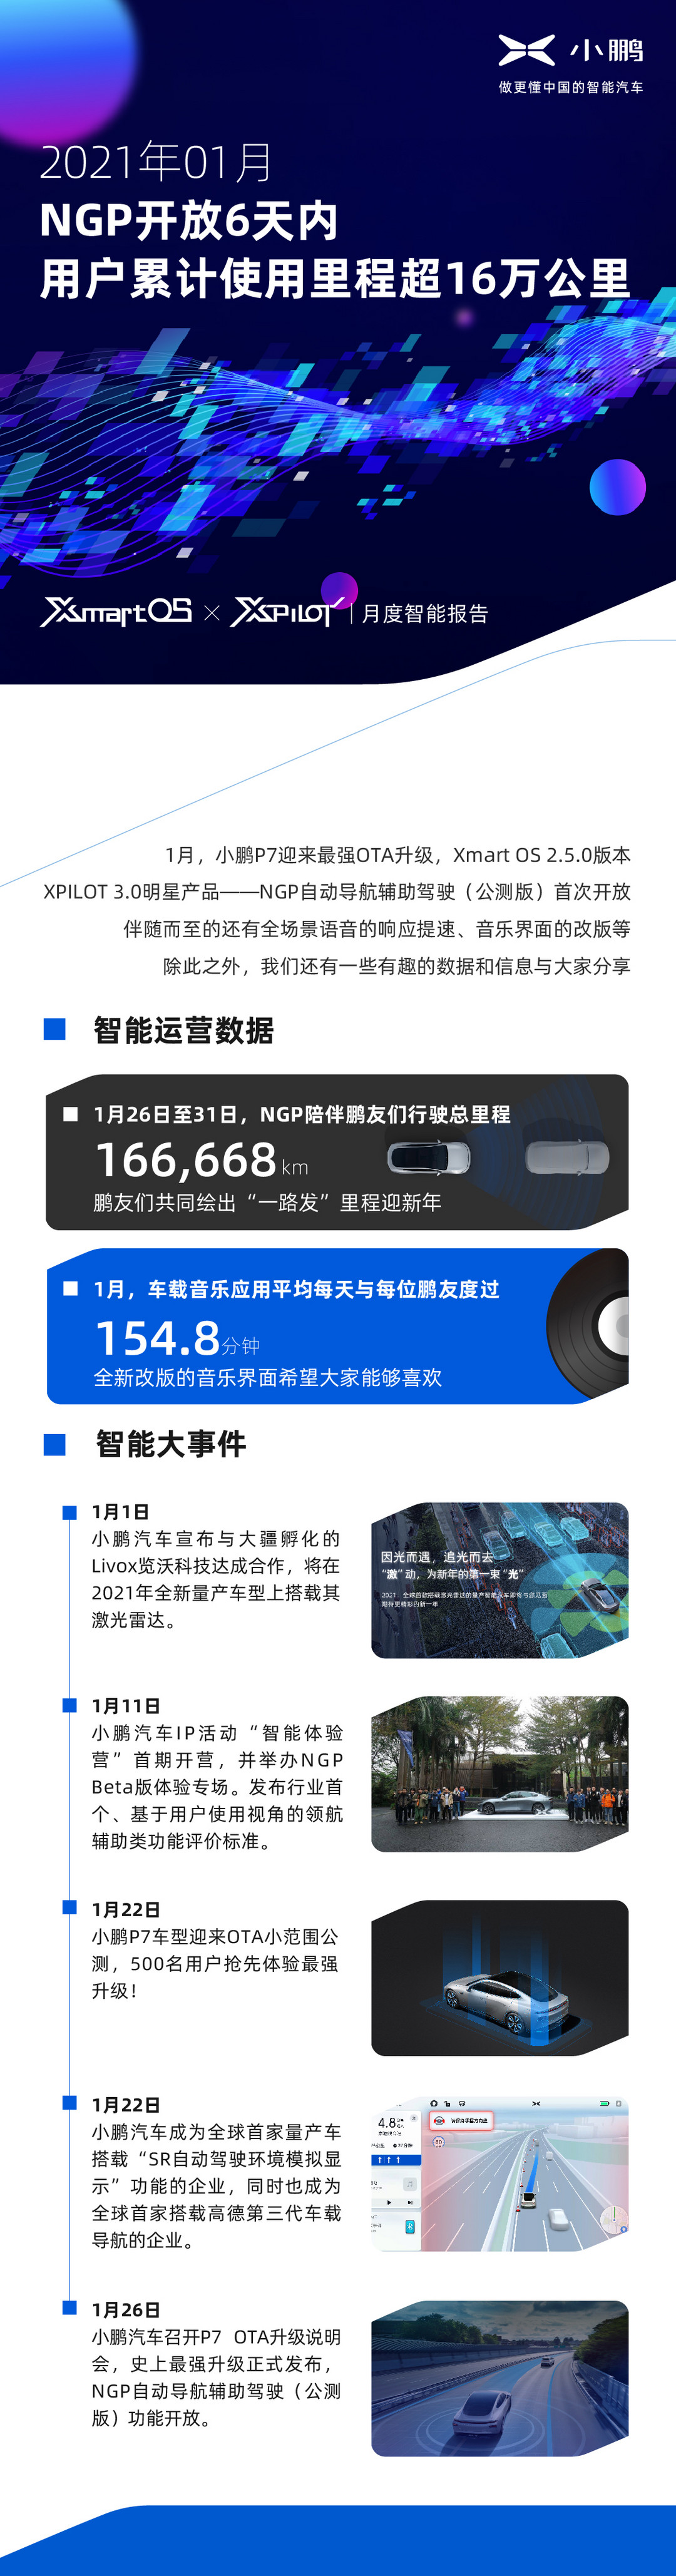 Ежемесячный интеллектуальный отчет Xpeng Motors: В январе 2021 года совокупный пробег пользователей превысил 160 000 километров за 6 дней с момента открытия NGP.